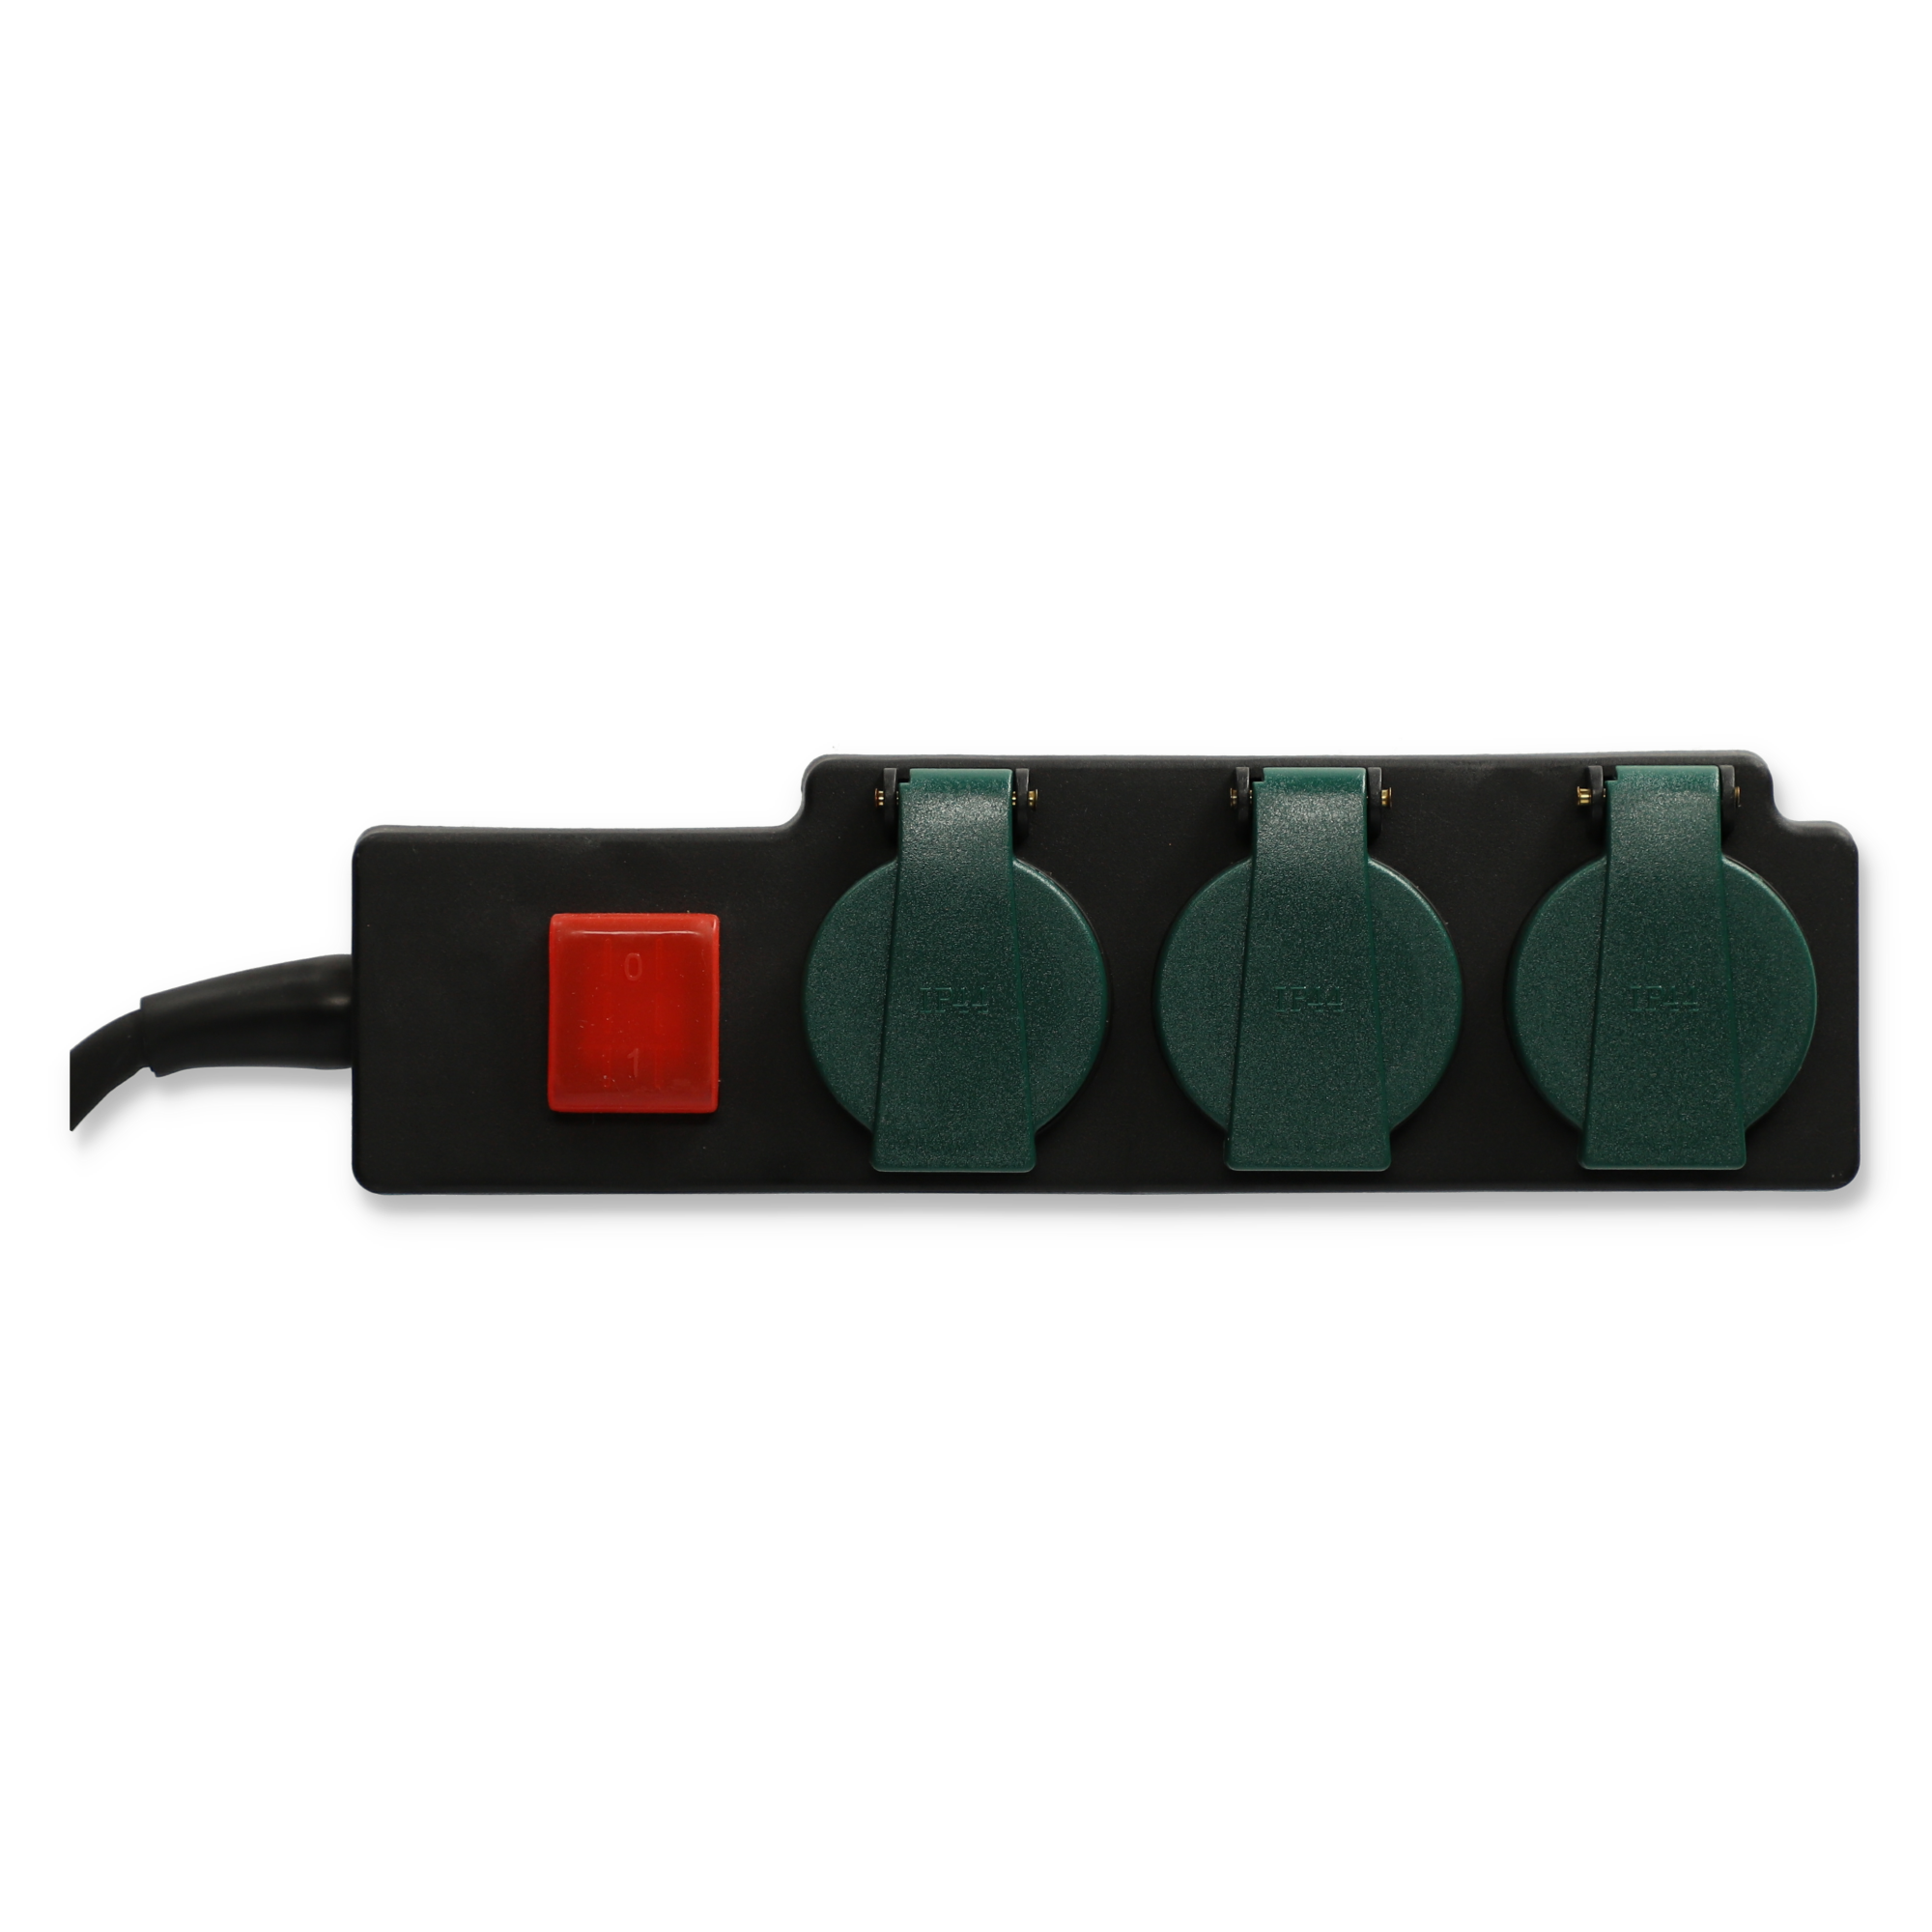 Außen-Steckerleiste mit Schalter 3-fach schwarz/grün + product picture